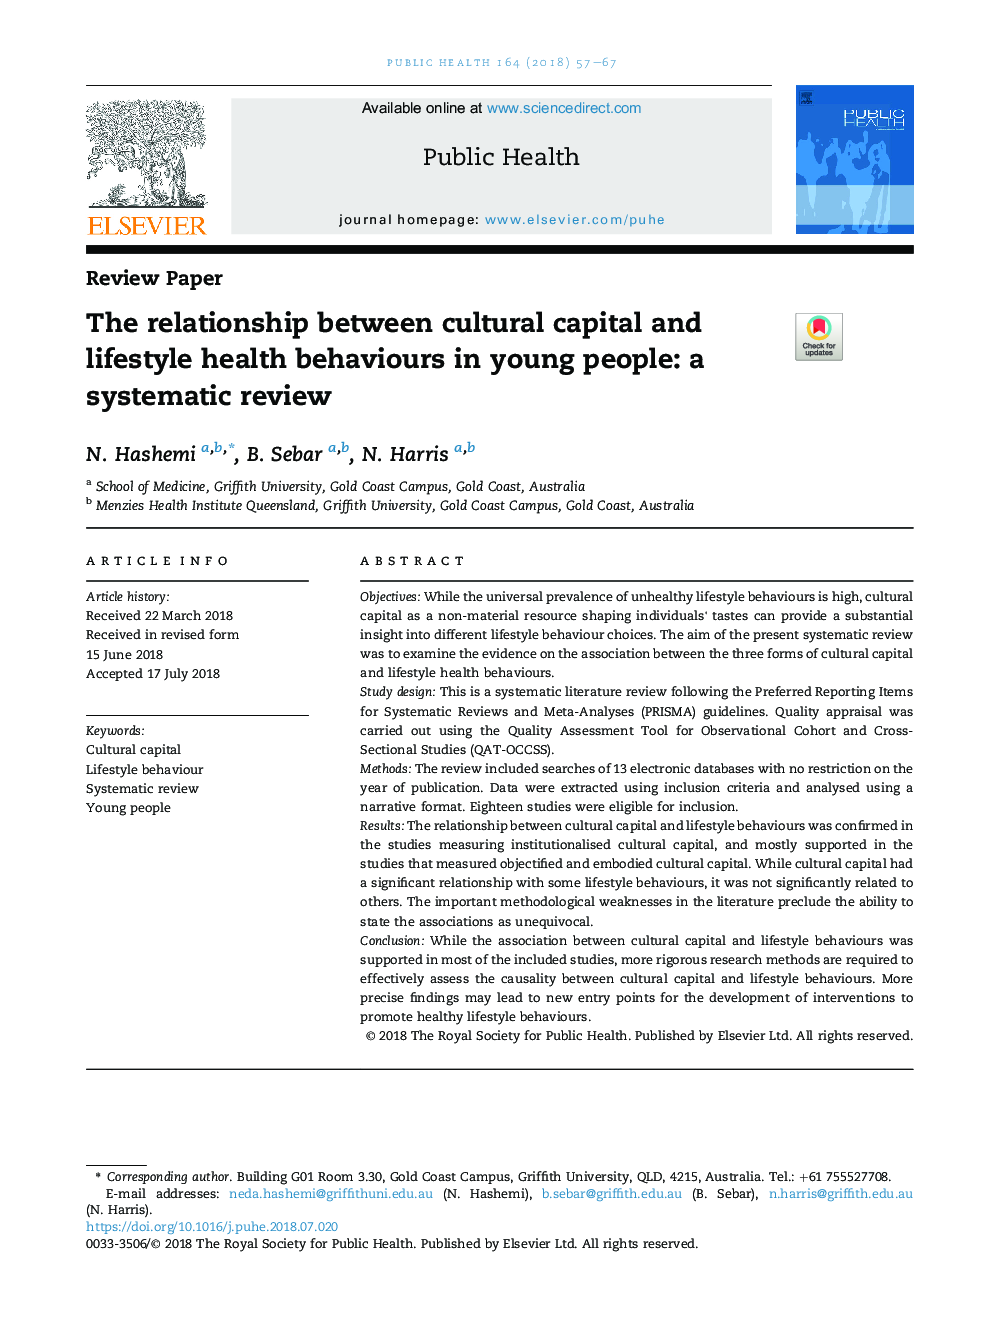 رابطه بین سرمایه های فرهنگی و رفتارهای بهداشتی شیوه زندگی در جوانان: بررسی سیستماتیک